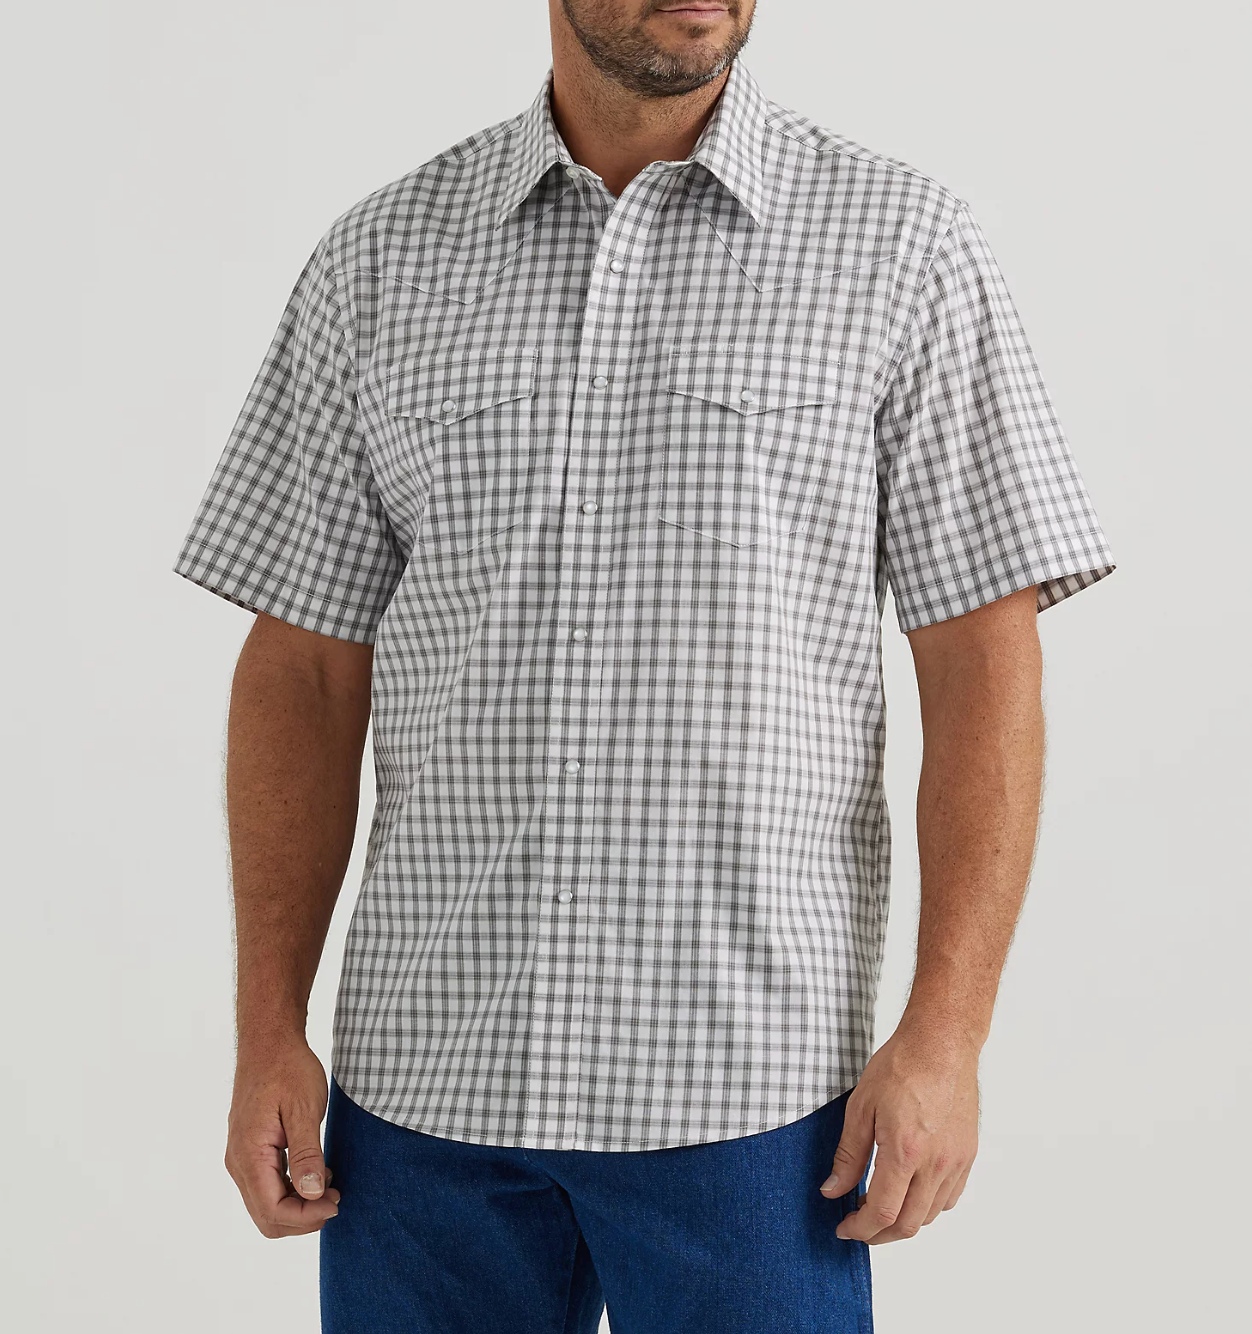 Wrangler Wrinkle Resist Short Sleeve Shirt - Classic Fit